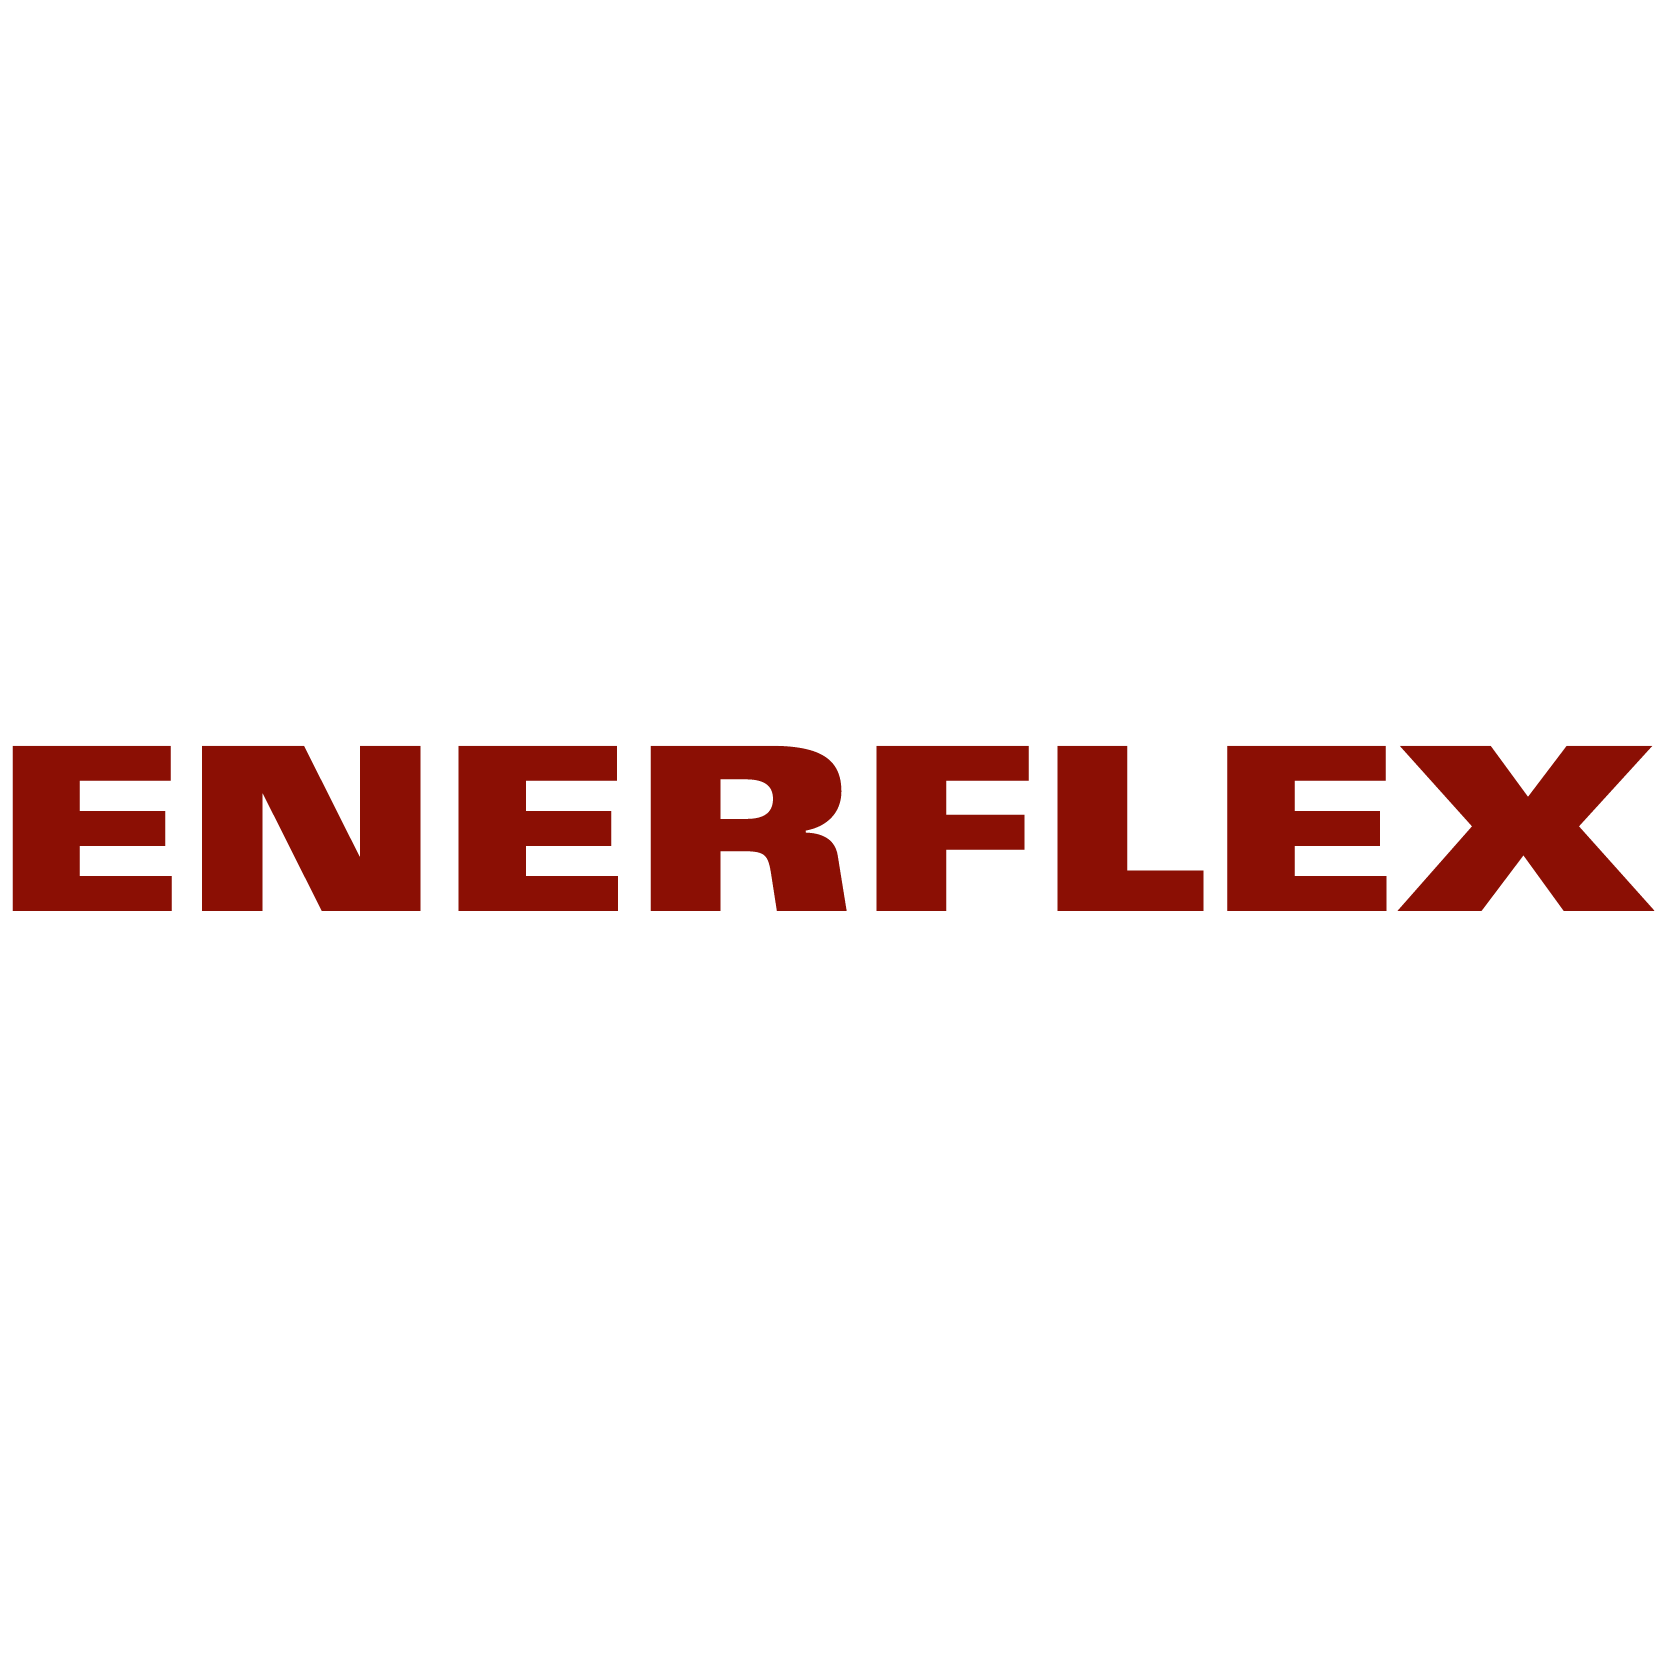 enerflex-logo